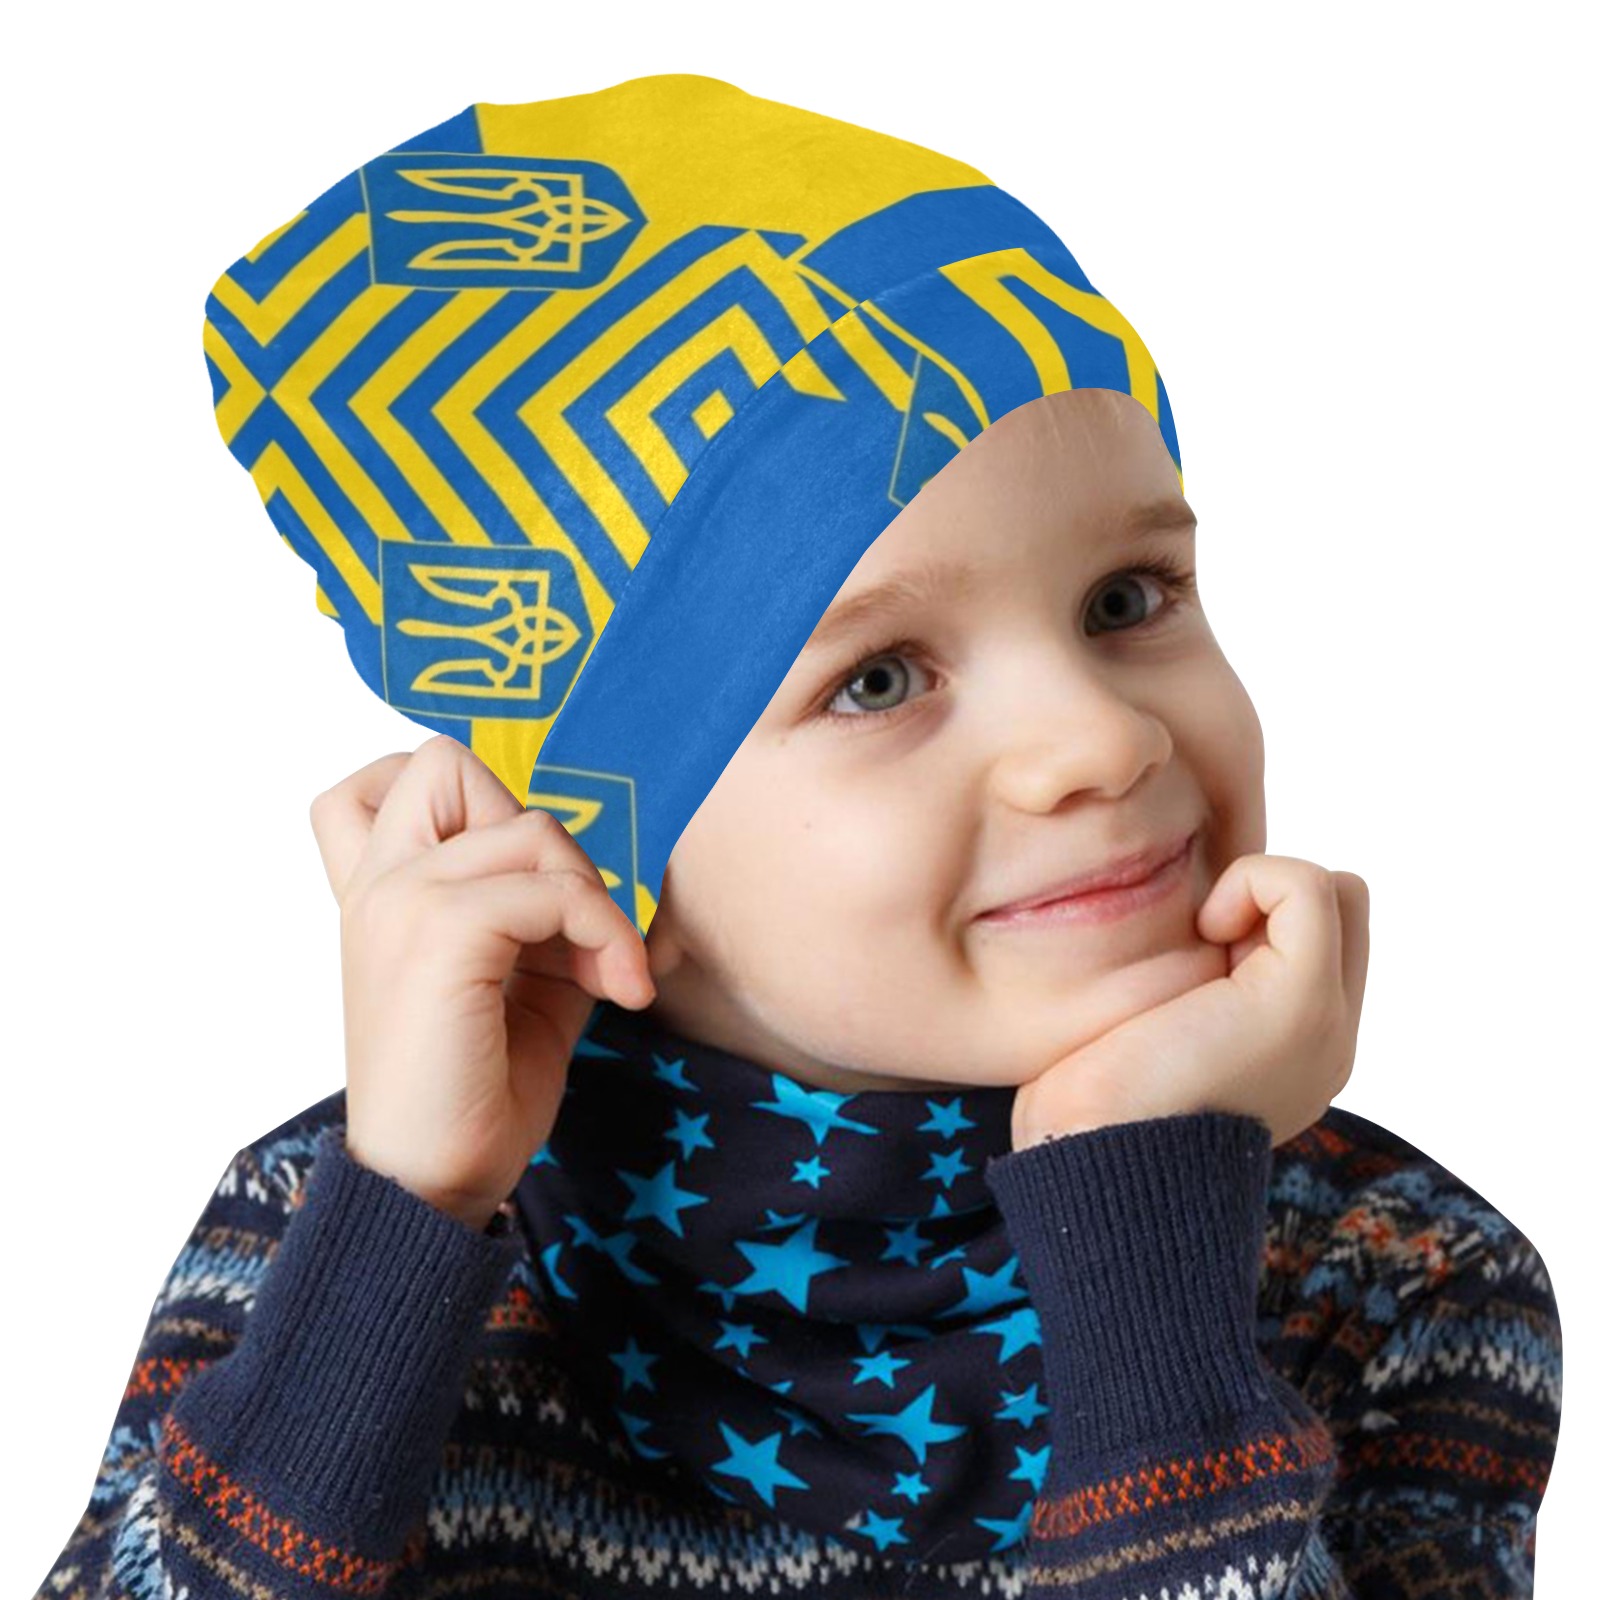 UKRAINE 2 All Over Print Beanie for Kids